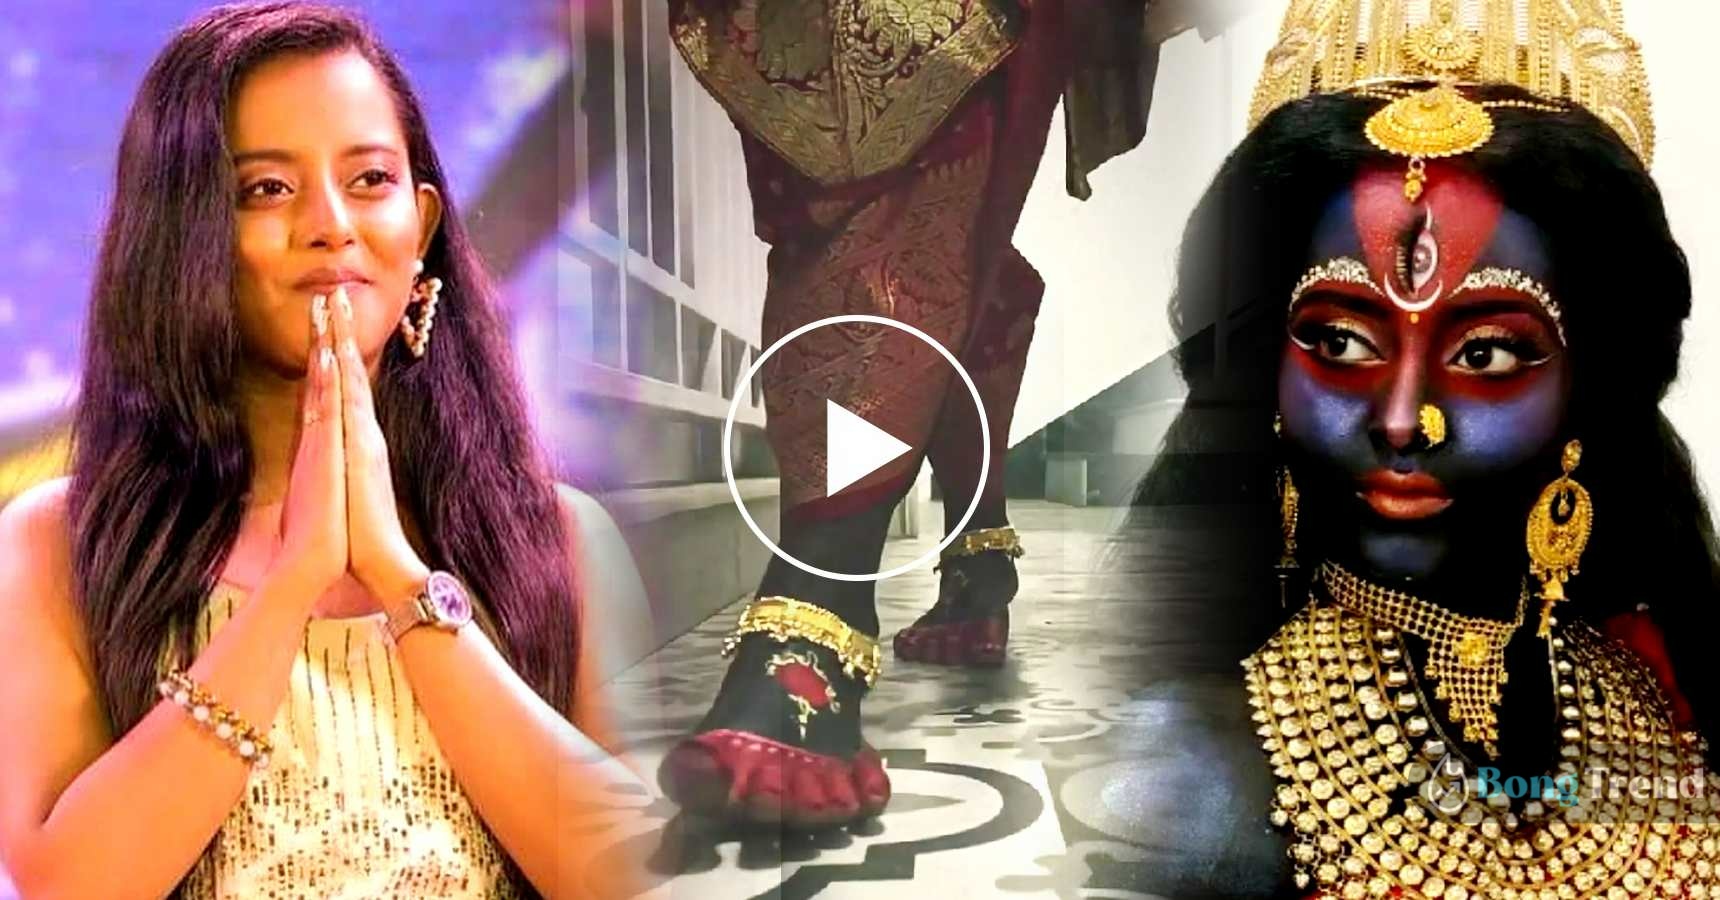 শ্রুতি দাস,Shruti Das,মা কালী,Ma Kali,মেকআপ,Make Up,ভিডিও,Video,ভাইরাল,Viral